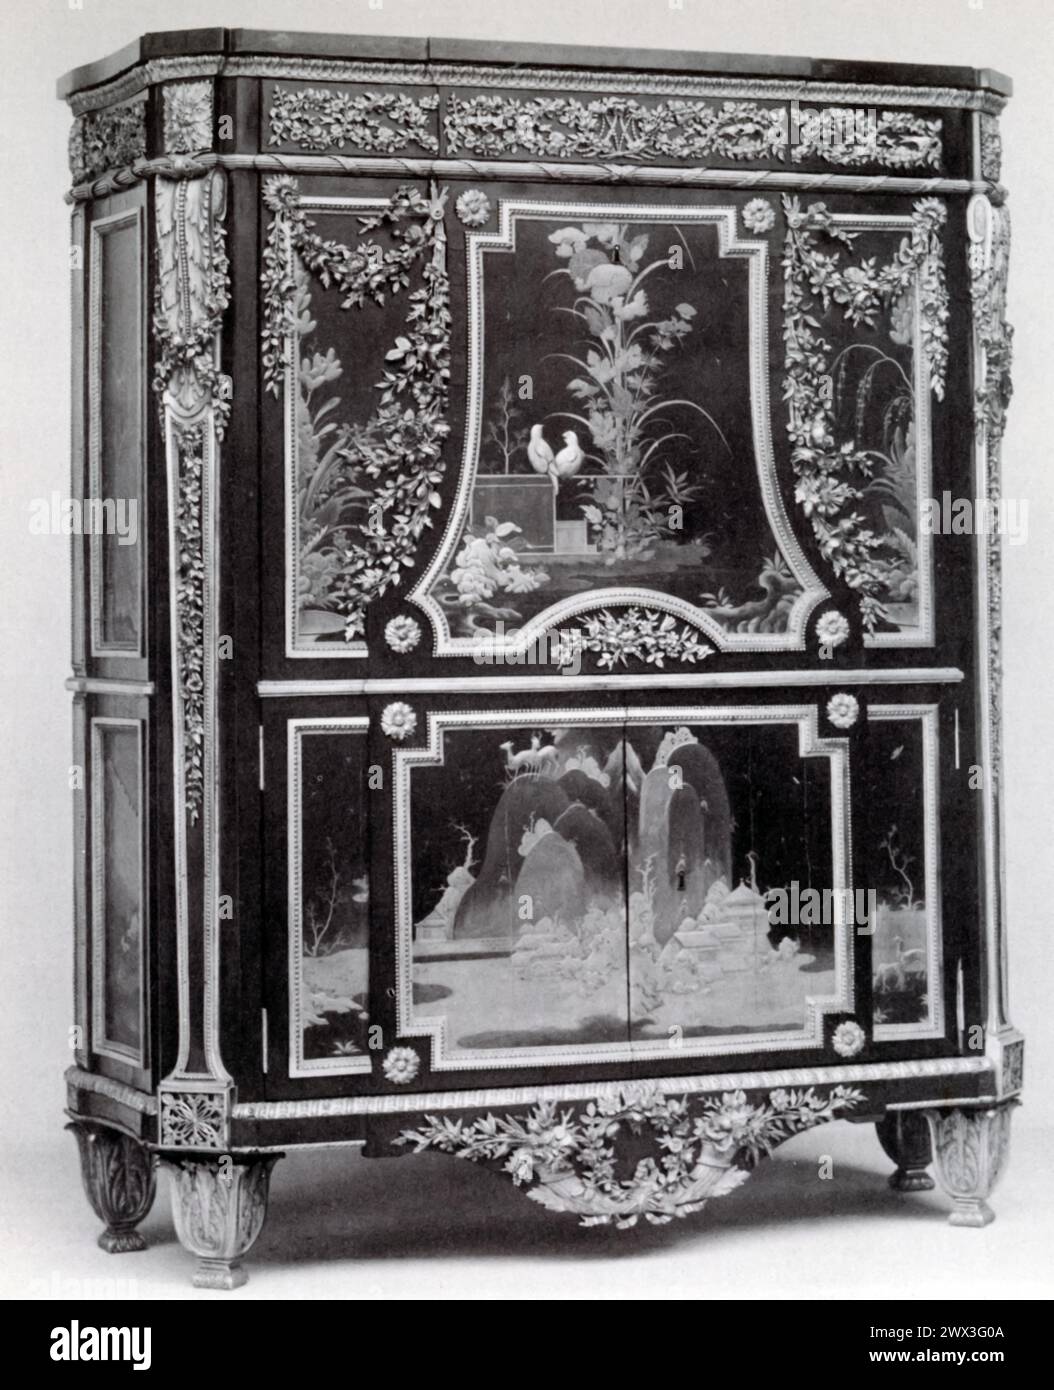 Ein Schreibtisch von Jean-Henri Riesener für das Königliche Château von Saint-Cloud. Dieses Möbelstück aus dem späten 18. Jahrhundert ist ein Beispiel für die hohe Handwerkskunst und Eleganz, die mit französischen königlichen Kommissionen dieser Zeit verbunden war. Riesener war bekannt für seine raffinierten Entwürfe und die außergewöhnliche Qualität seiner Arbeiten, die oft komplizierte Intarsien, vergoldete Bronzematerial und innovative mechanische Merkmale in seine Werke einbrachten. Stockfoto